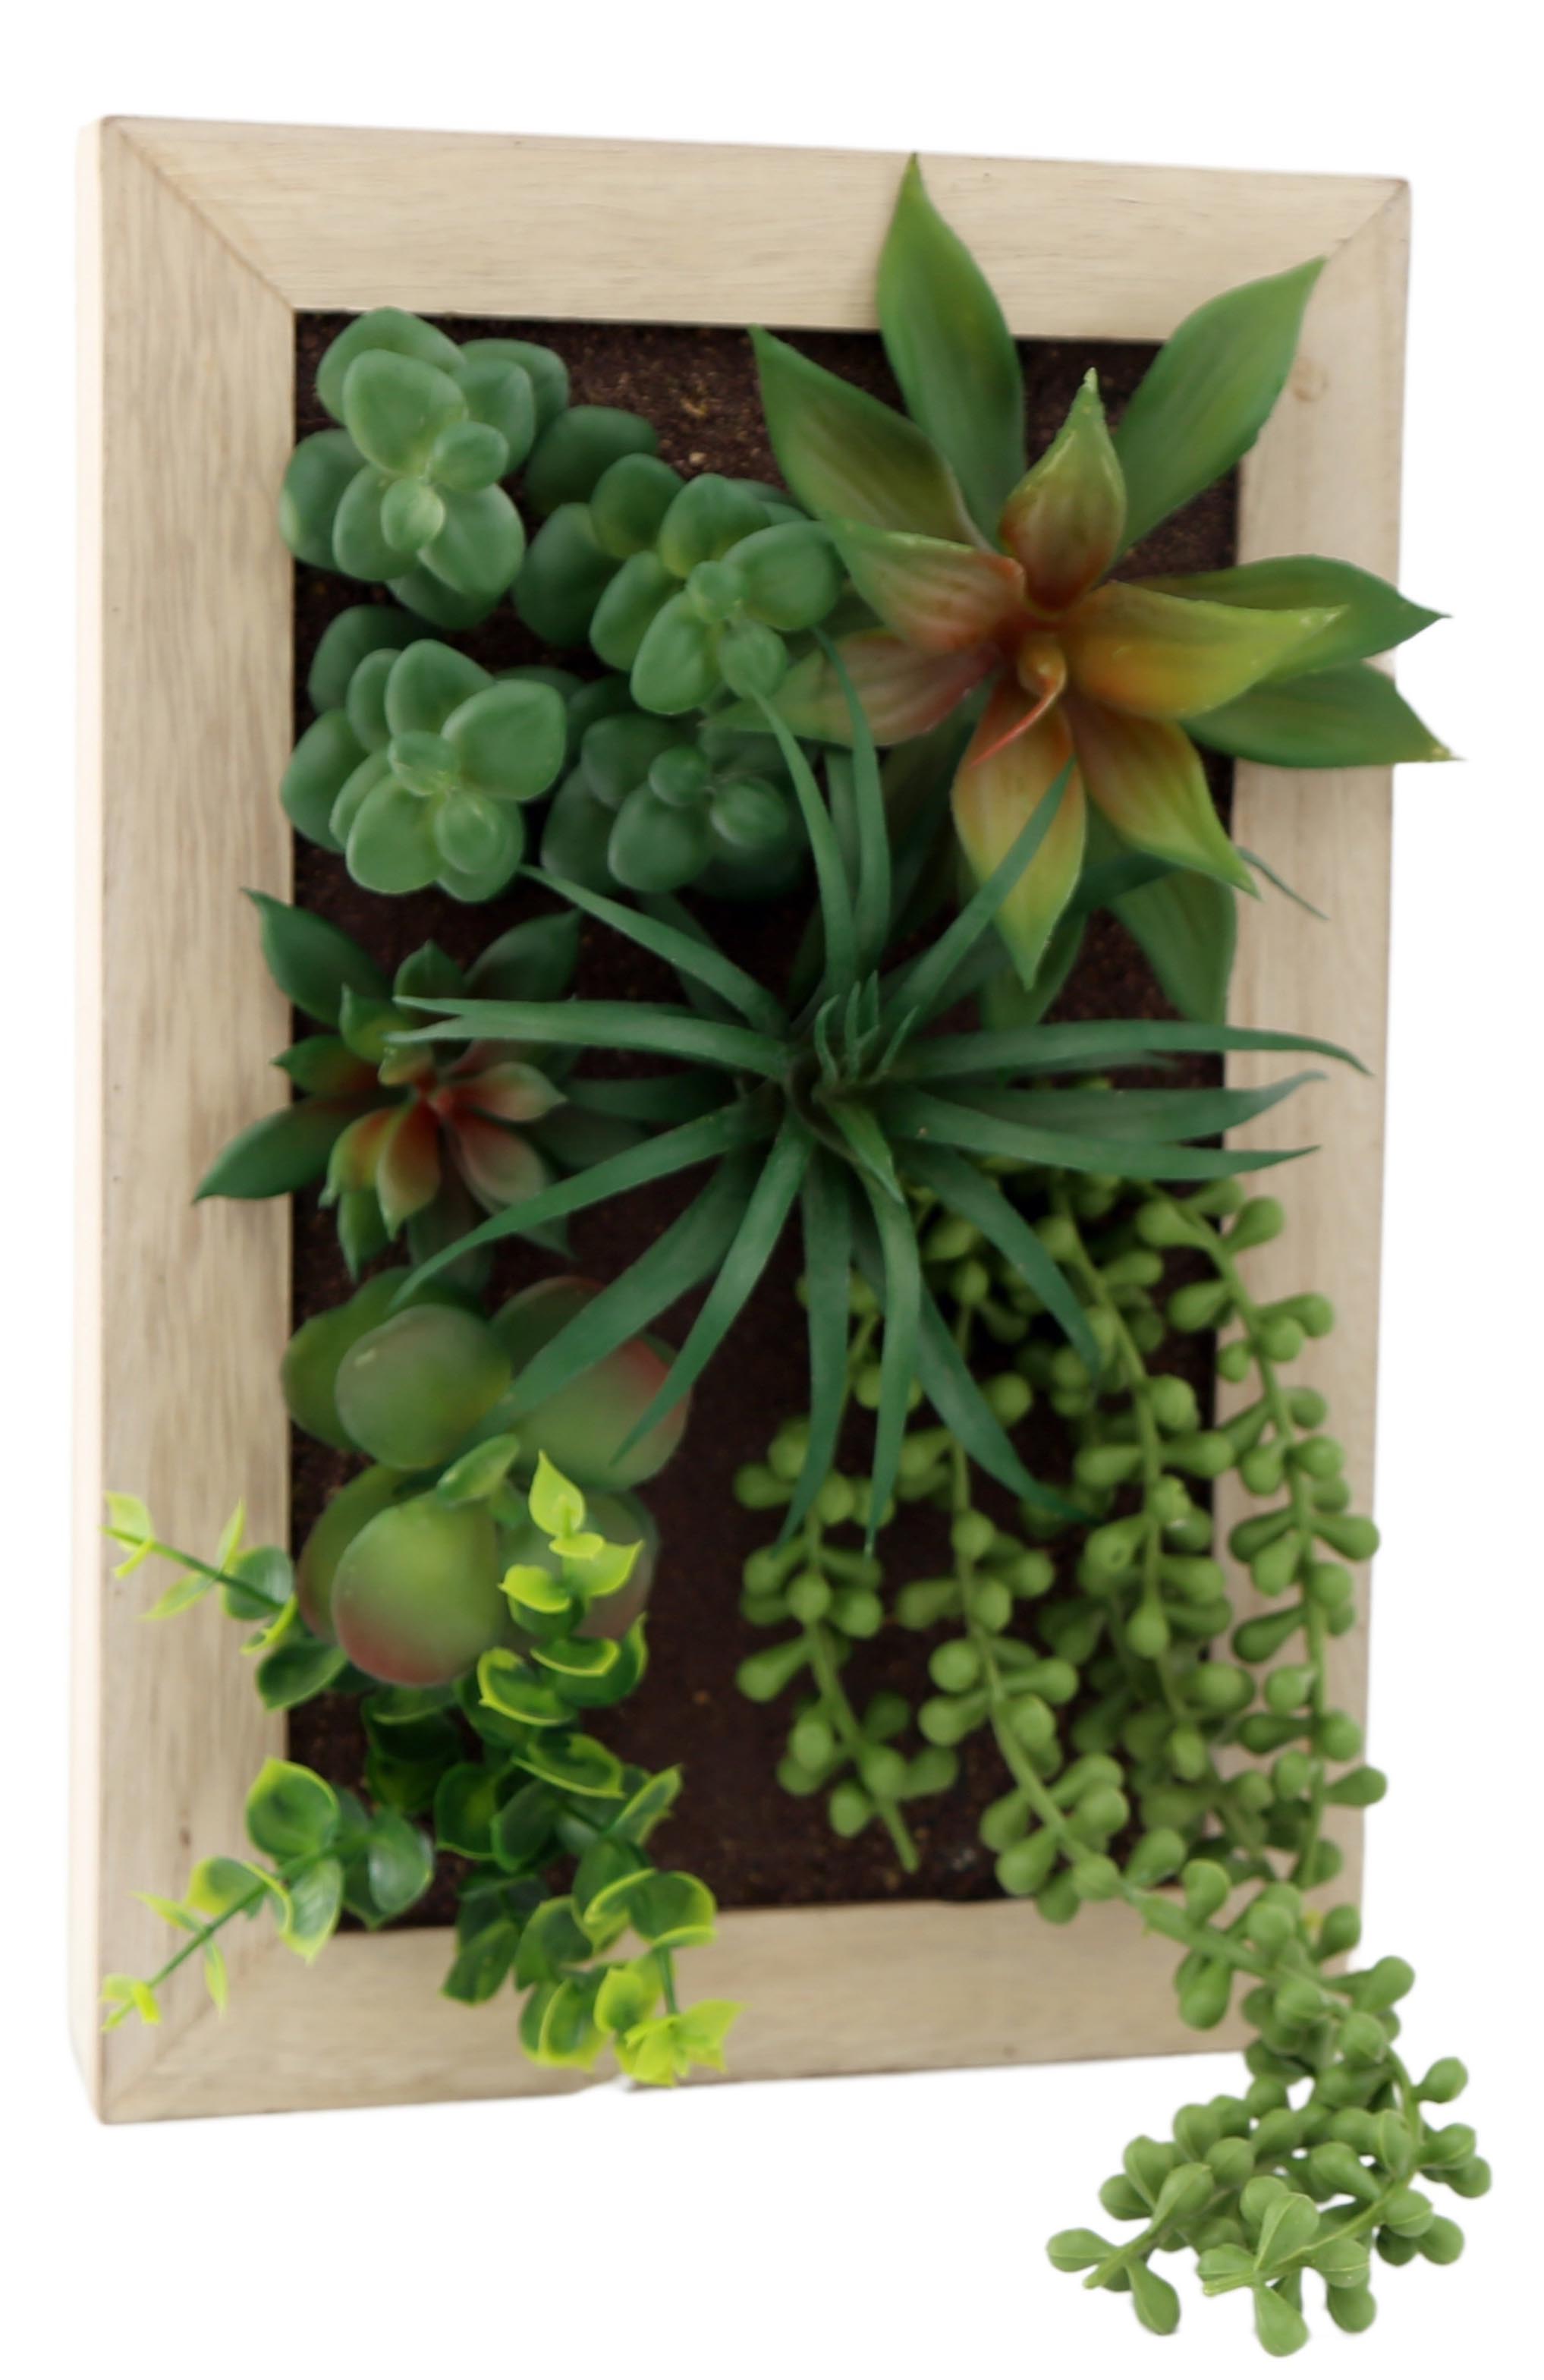 Plante verte charnue de simulation ronde, cadre mural, décoration